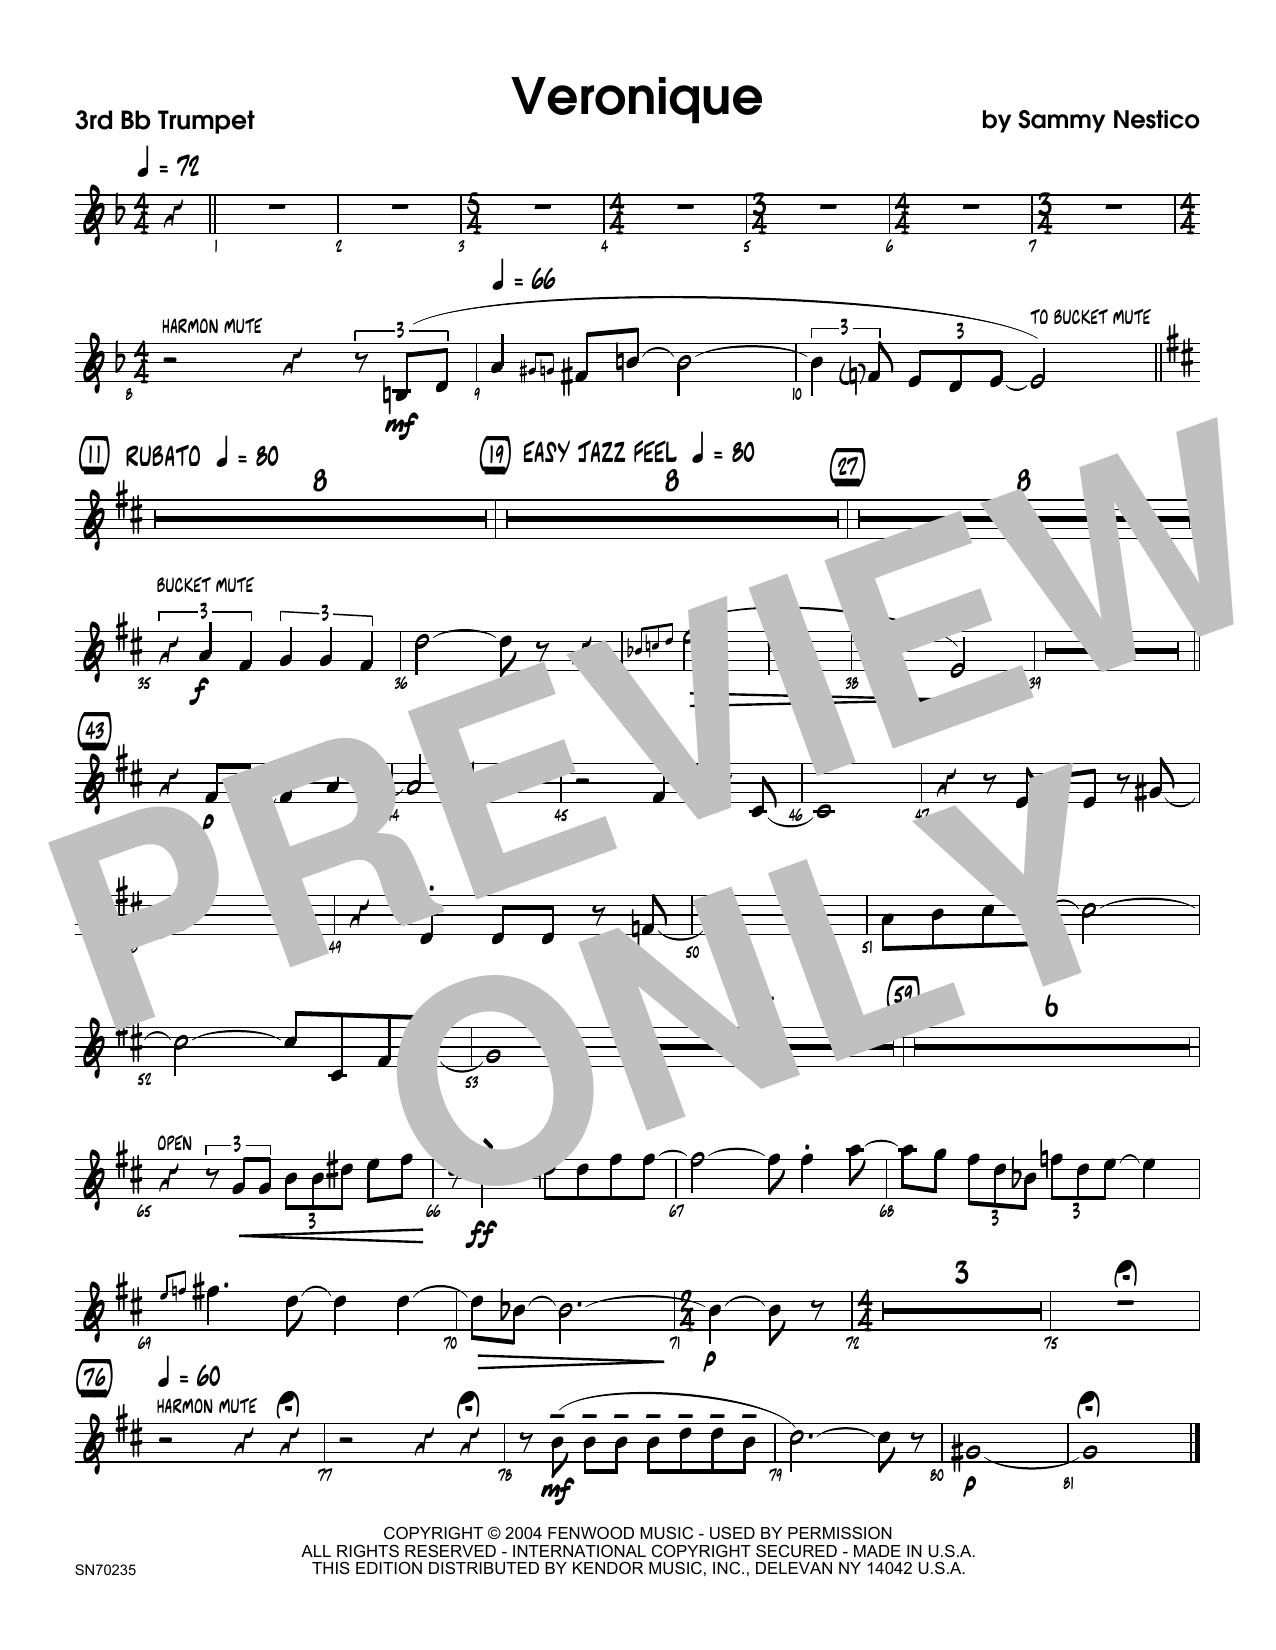 Download Sammy Nestico Veronique - 3rd Bb Trumpet Sheet Music